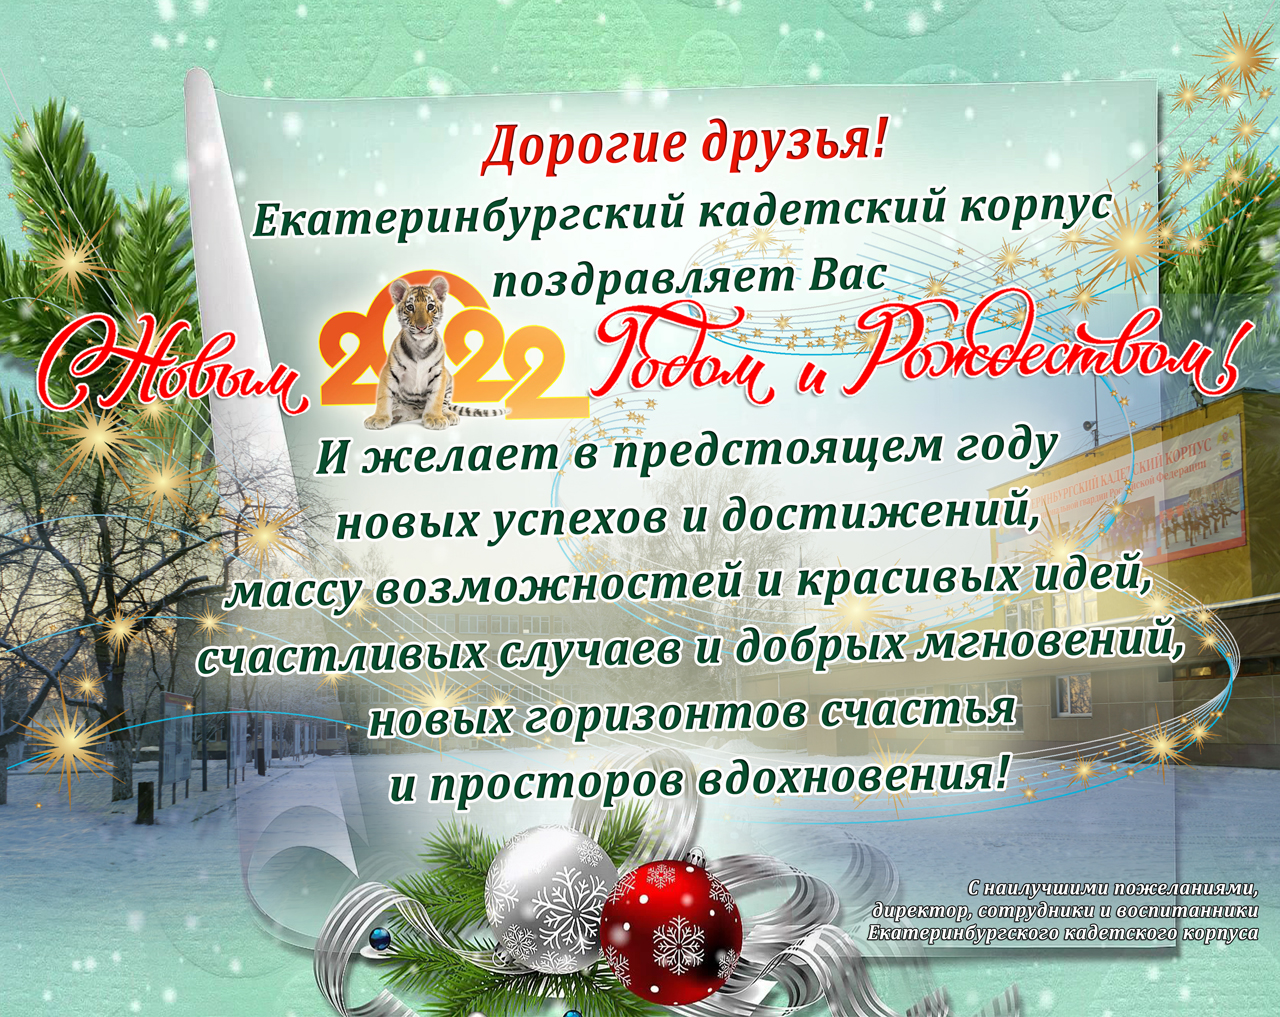 Поздравление с Новым годом от В.А. Кутырева